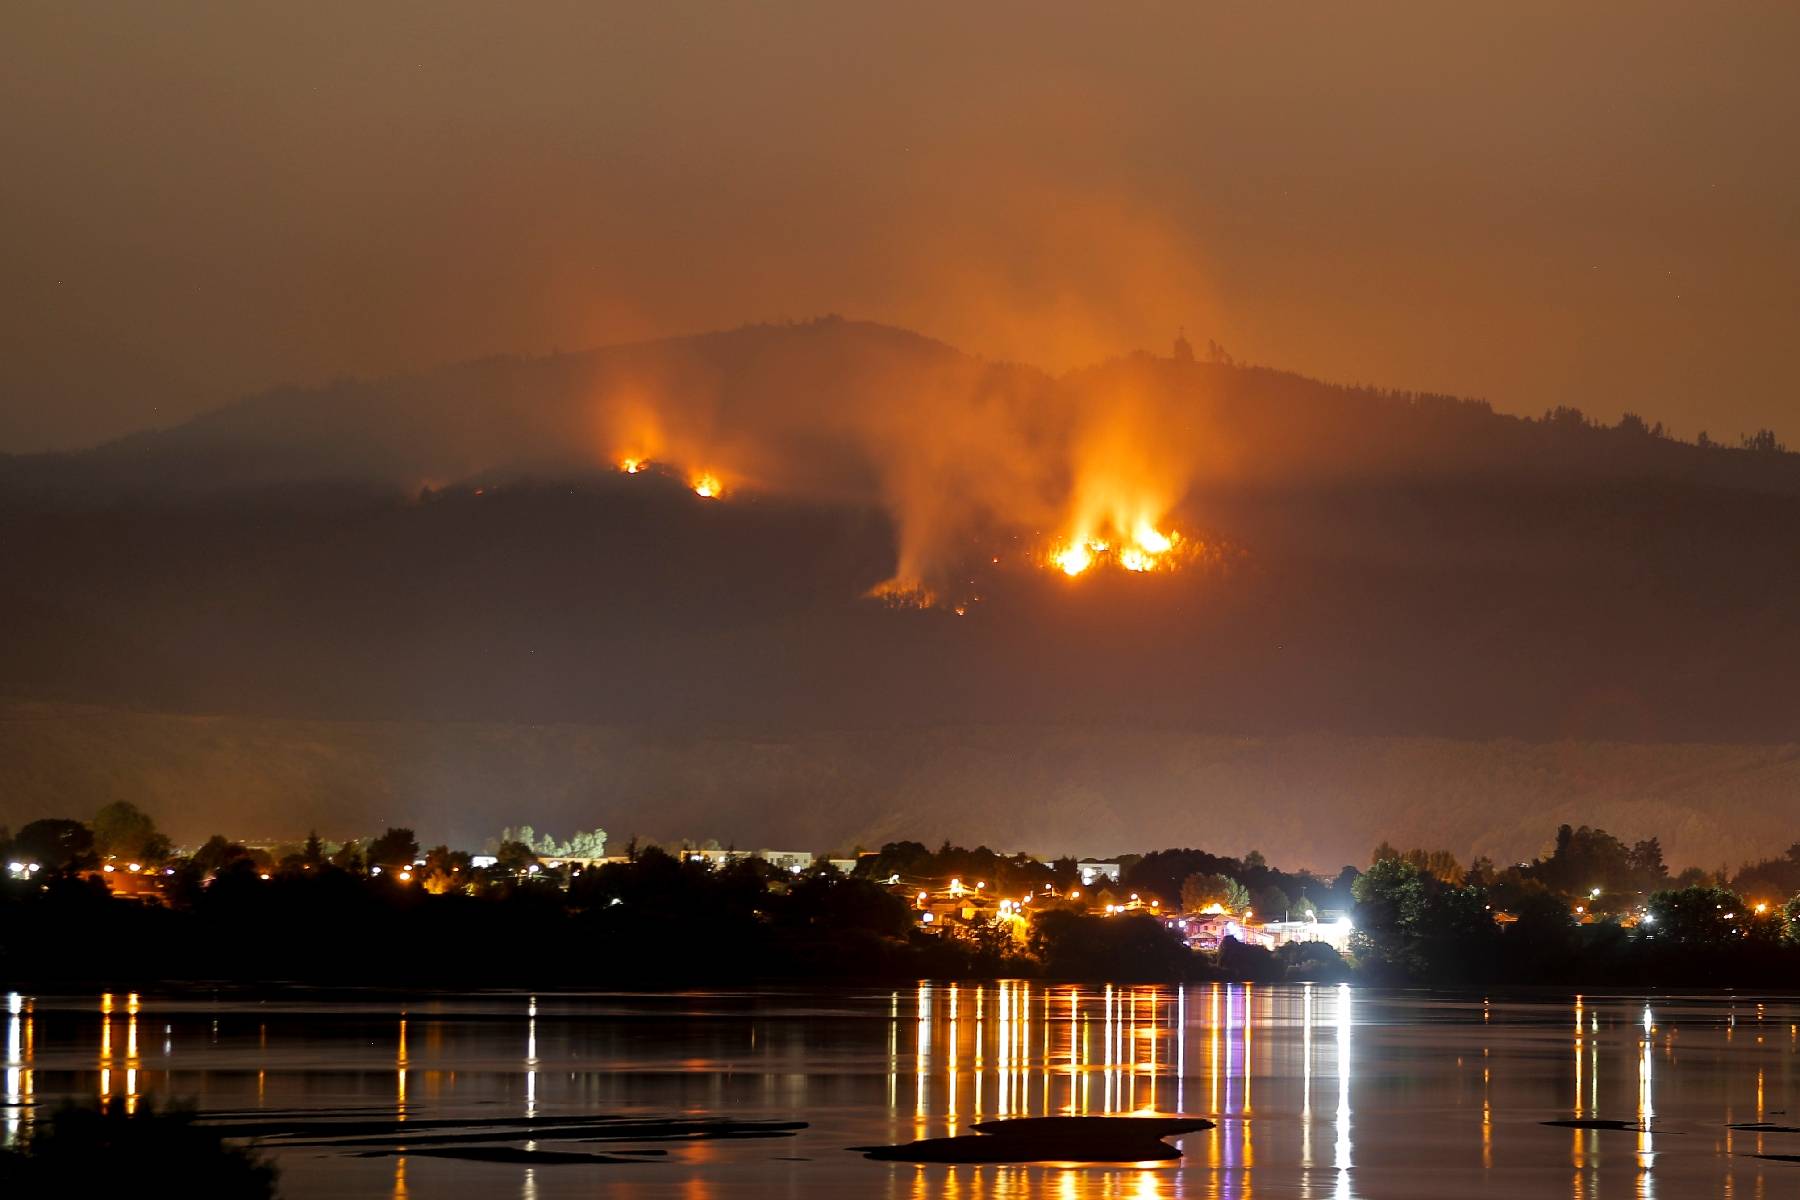 Incendies au Chili: couvre-feu décrété dans les zones les plus touchées